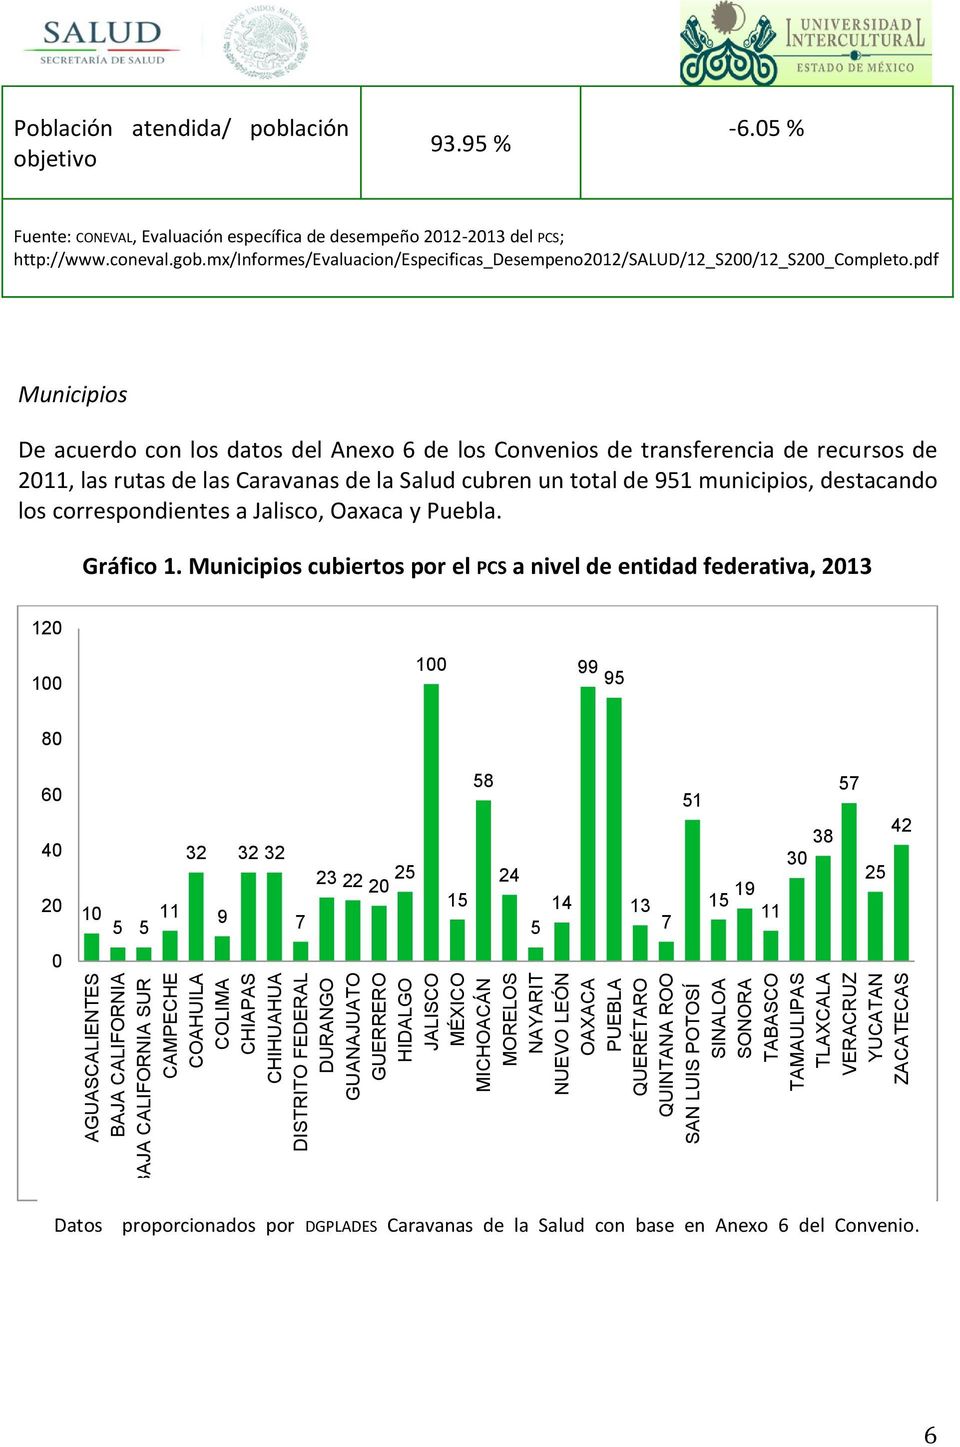 05 % Fuente: CONEVAL, Evaluación específica de desempeño 2012-2013 del PCS; http://www.coneval.gob.mx/informes/evaluacion/especificas_desempeno2012/salud/12_s200/12_s200_completo.